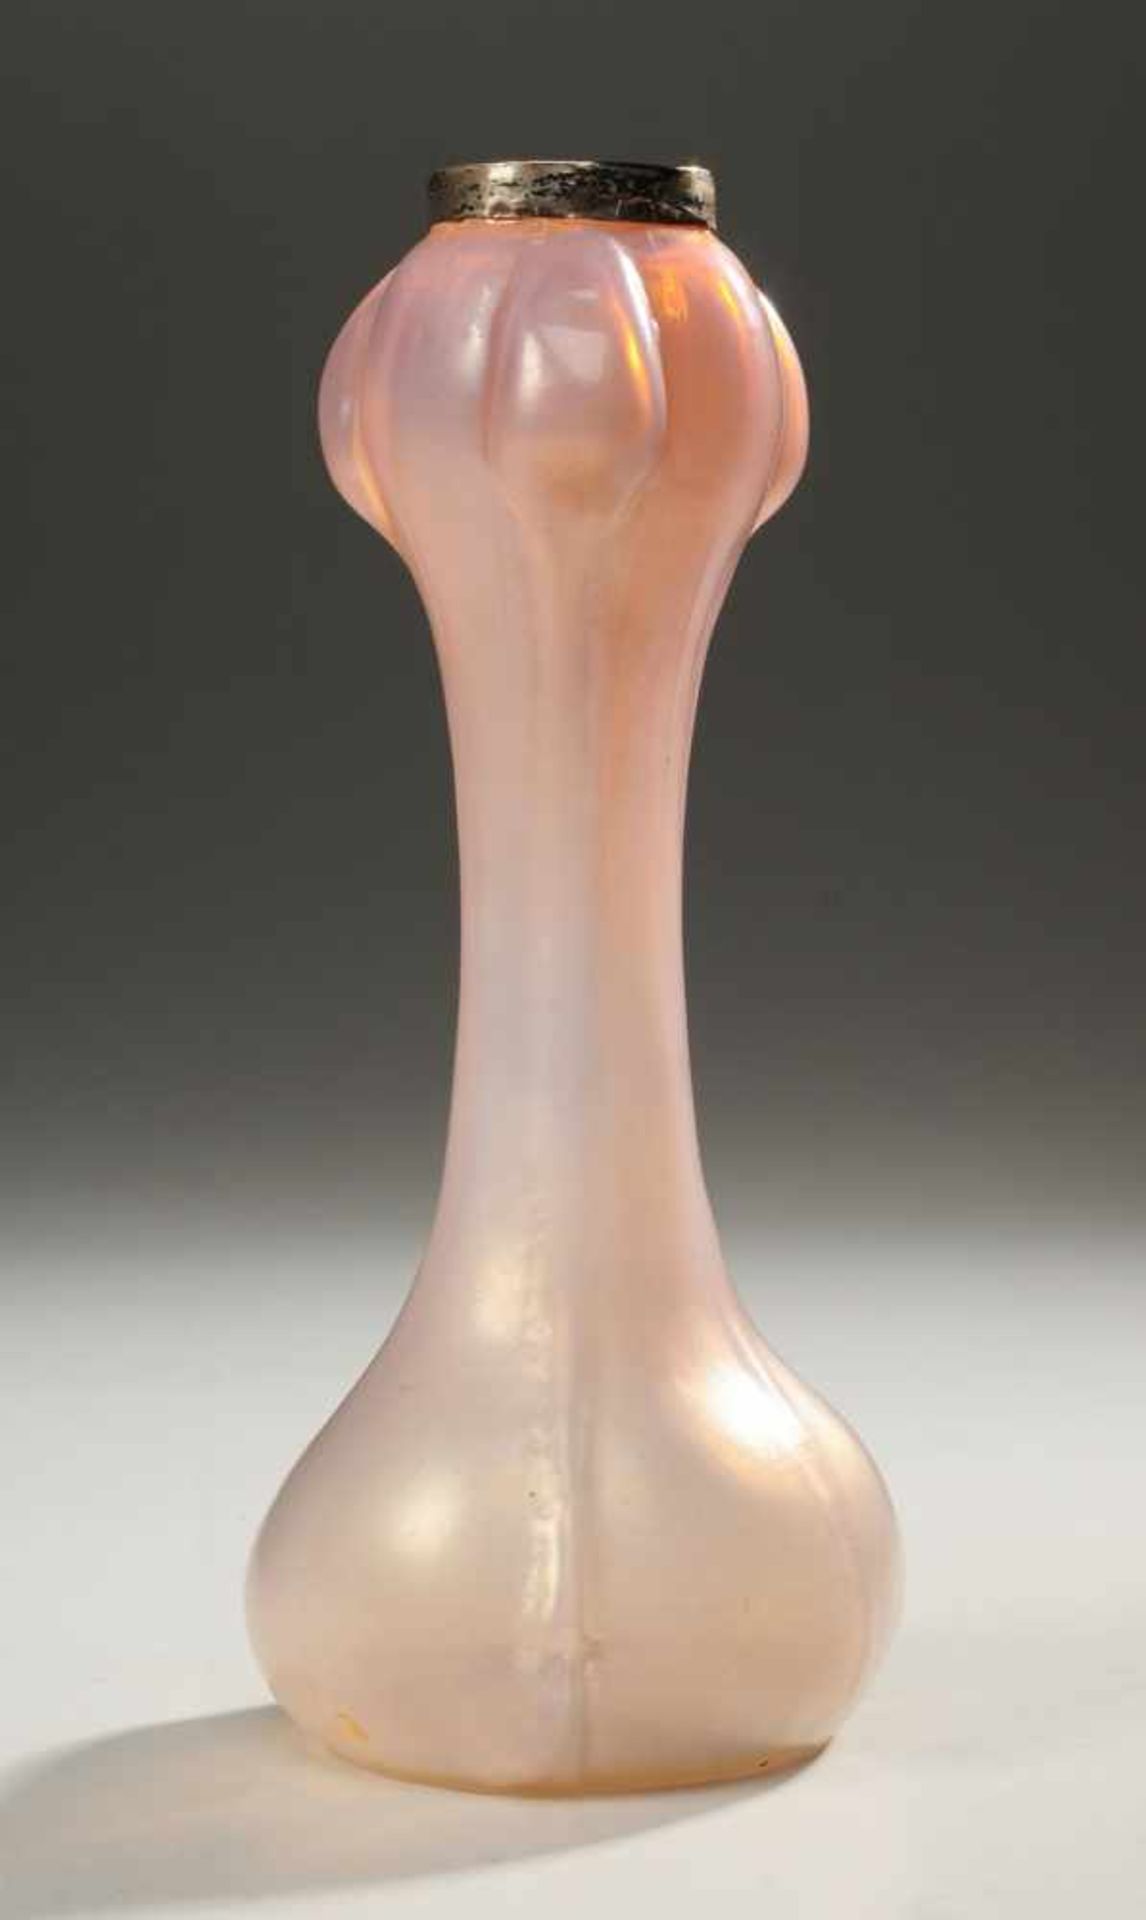 Jugendstil-VaseFarbloses Glas, von der Mündung her verlaufend zart violett, l. milchig überfangen.